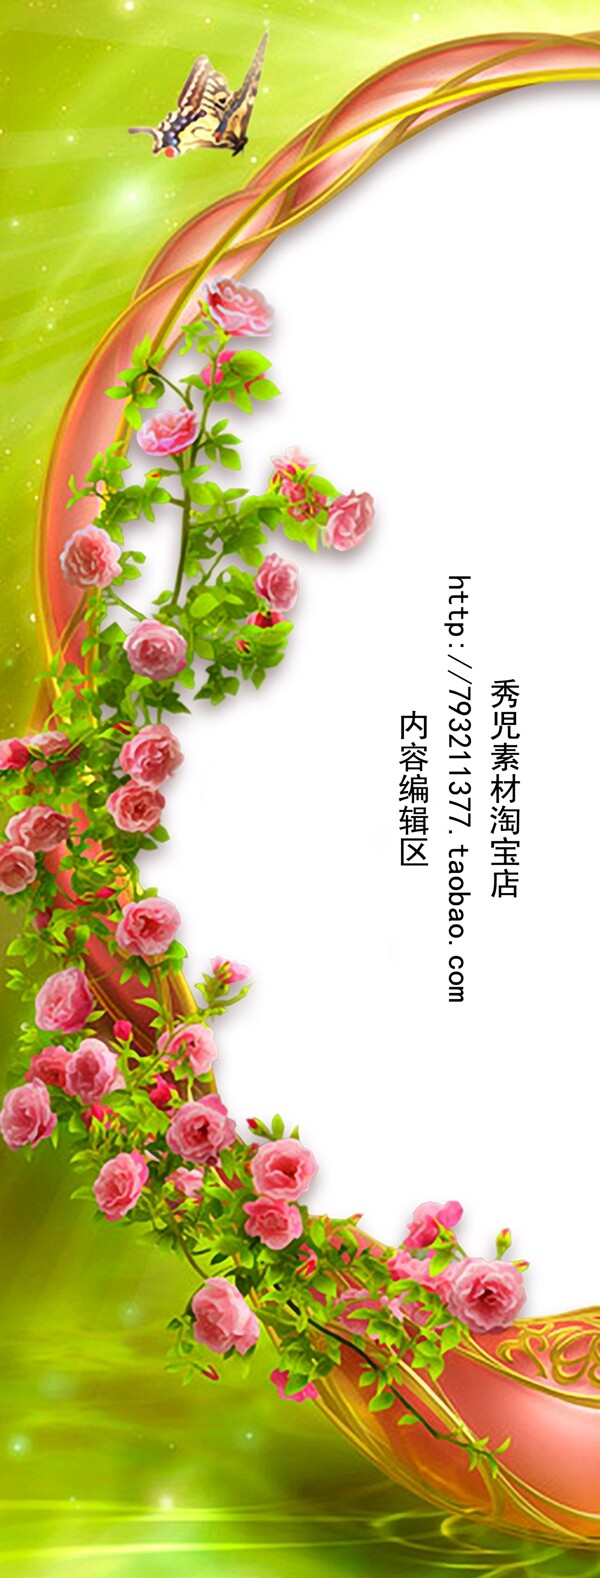 精美玫瑰花展架设计模板海报素材画面元素